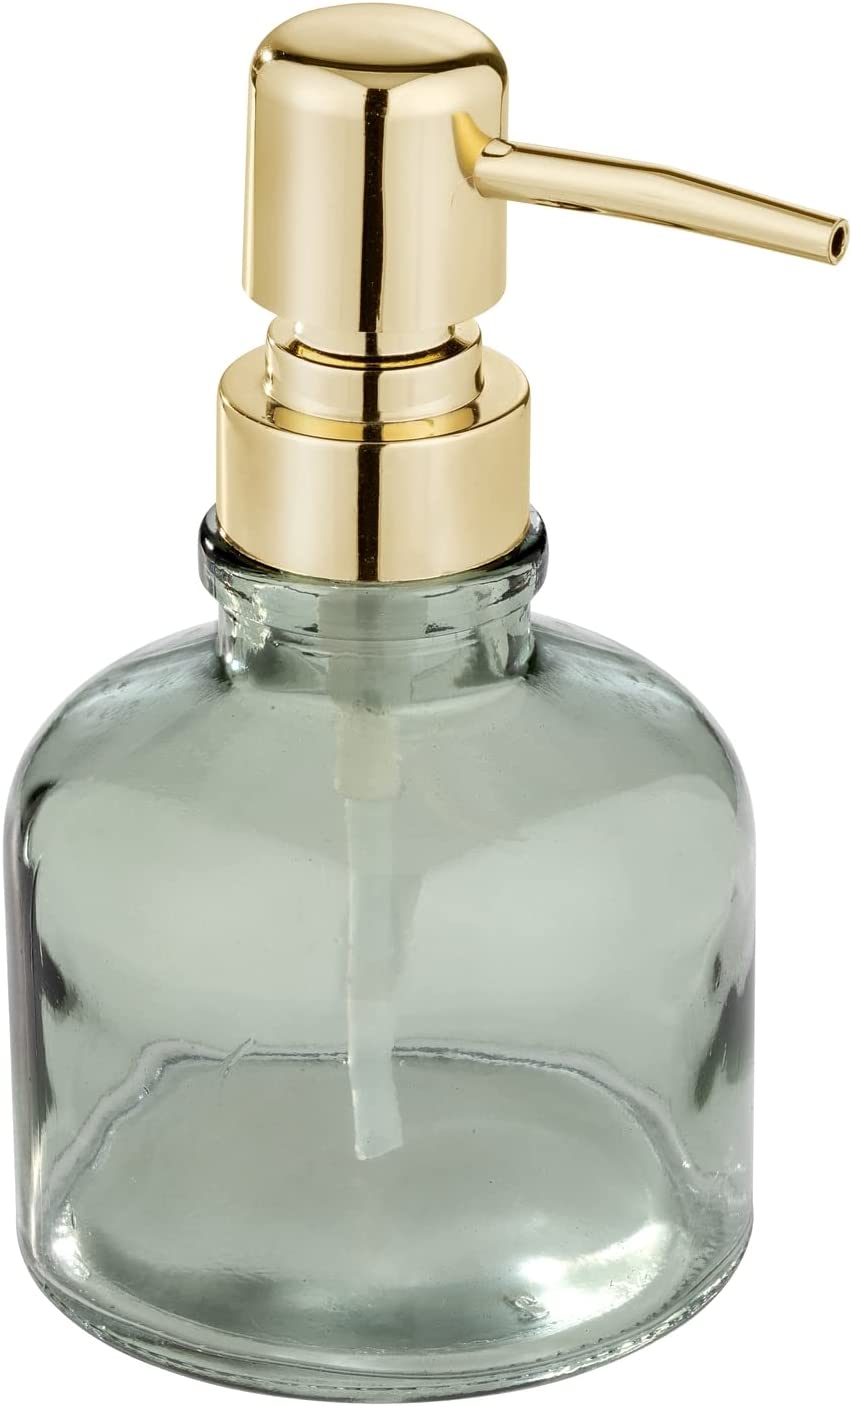 Seifenspender Atessa Mint, zierlicher Pumpspender aus Glas mit goldenem Pumpkopf, nachfüllbar mit bis zu 200 ml Flüssigseife, kleiner Seifendosierer ideal für das Waschbecken im Bad, Ø 8 x 14 cm